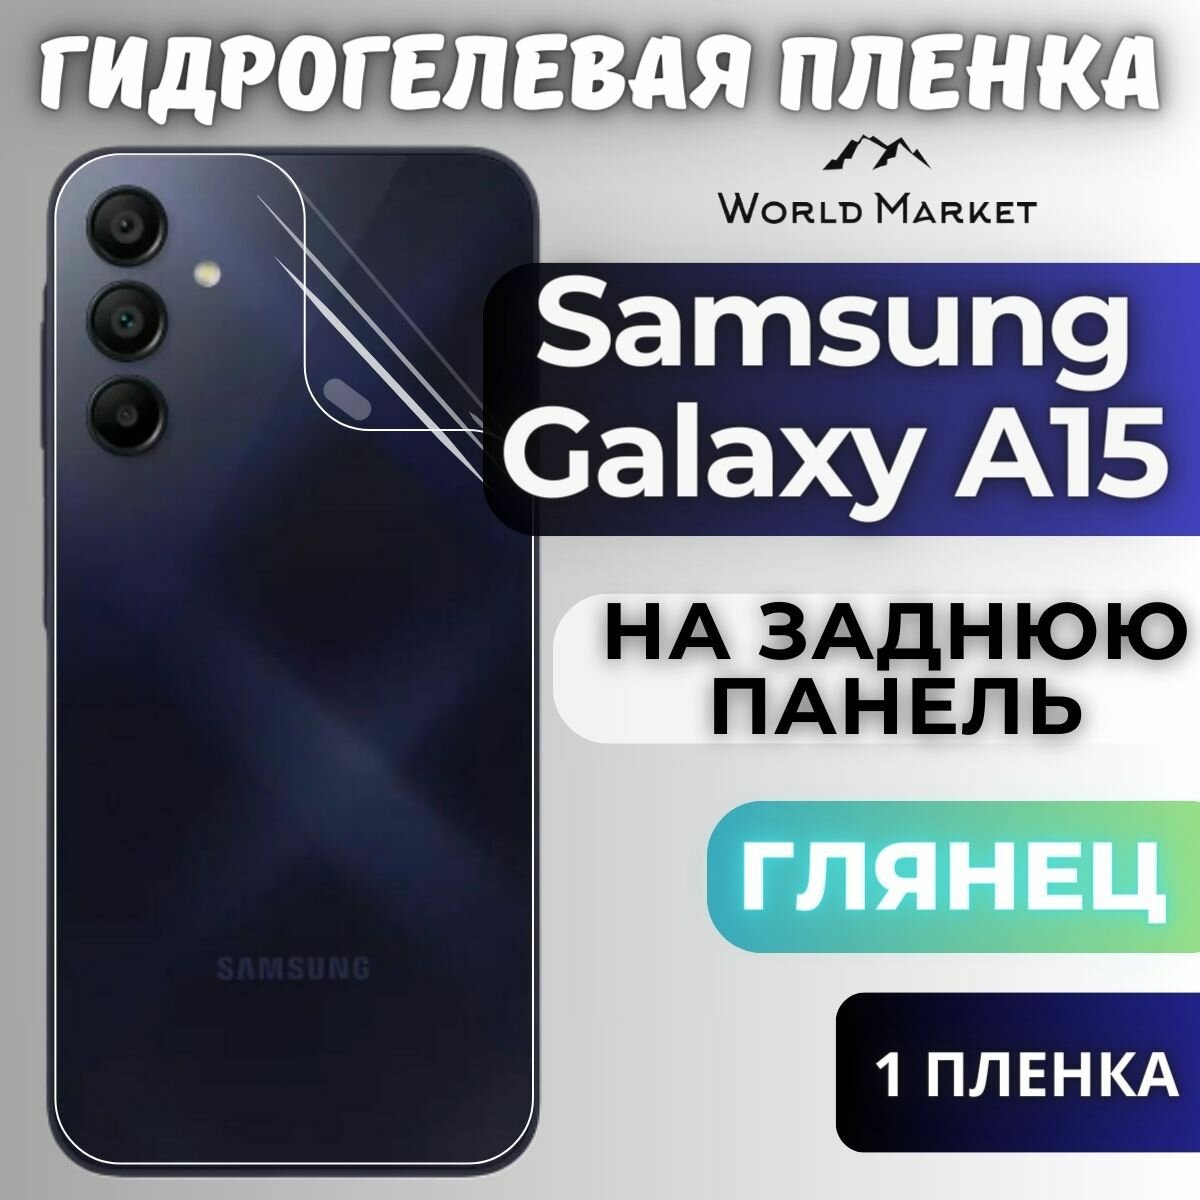 Защитная гидрогелевая пленка на Samsung Galaxy A15 4G/5G / глянцевая на заднюю панель / Противоударная бронепленка с эффектом восстановления на Самсунг Галакси А15